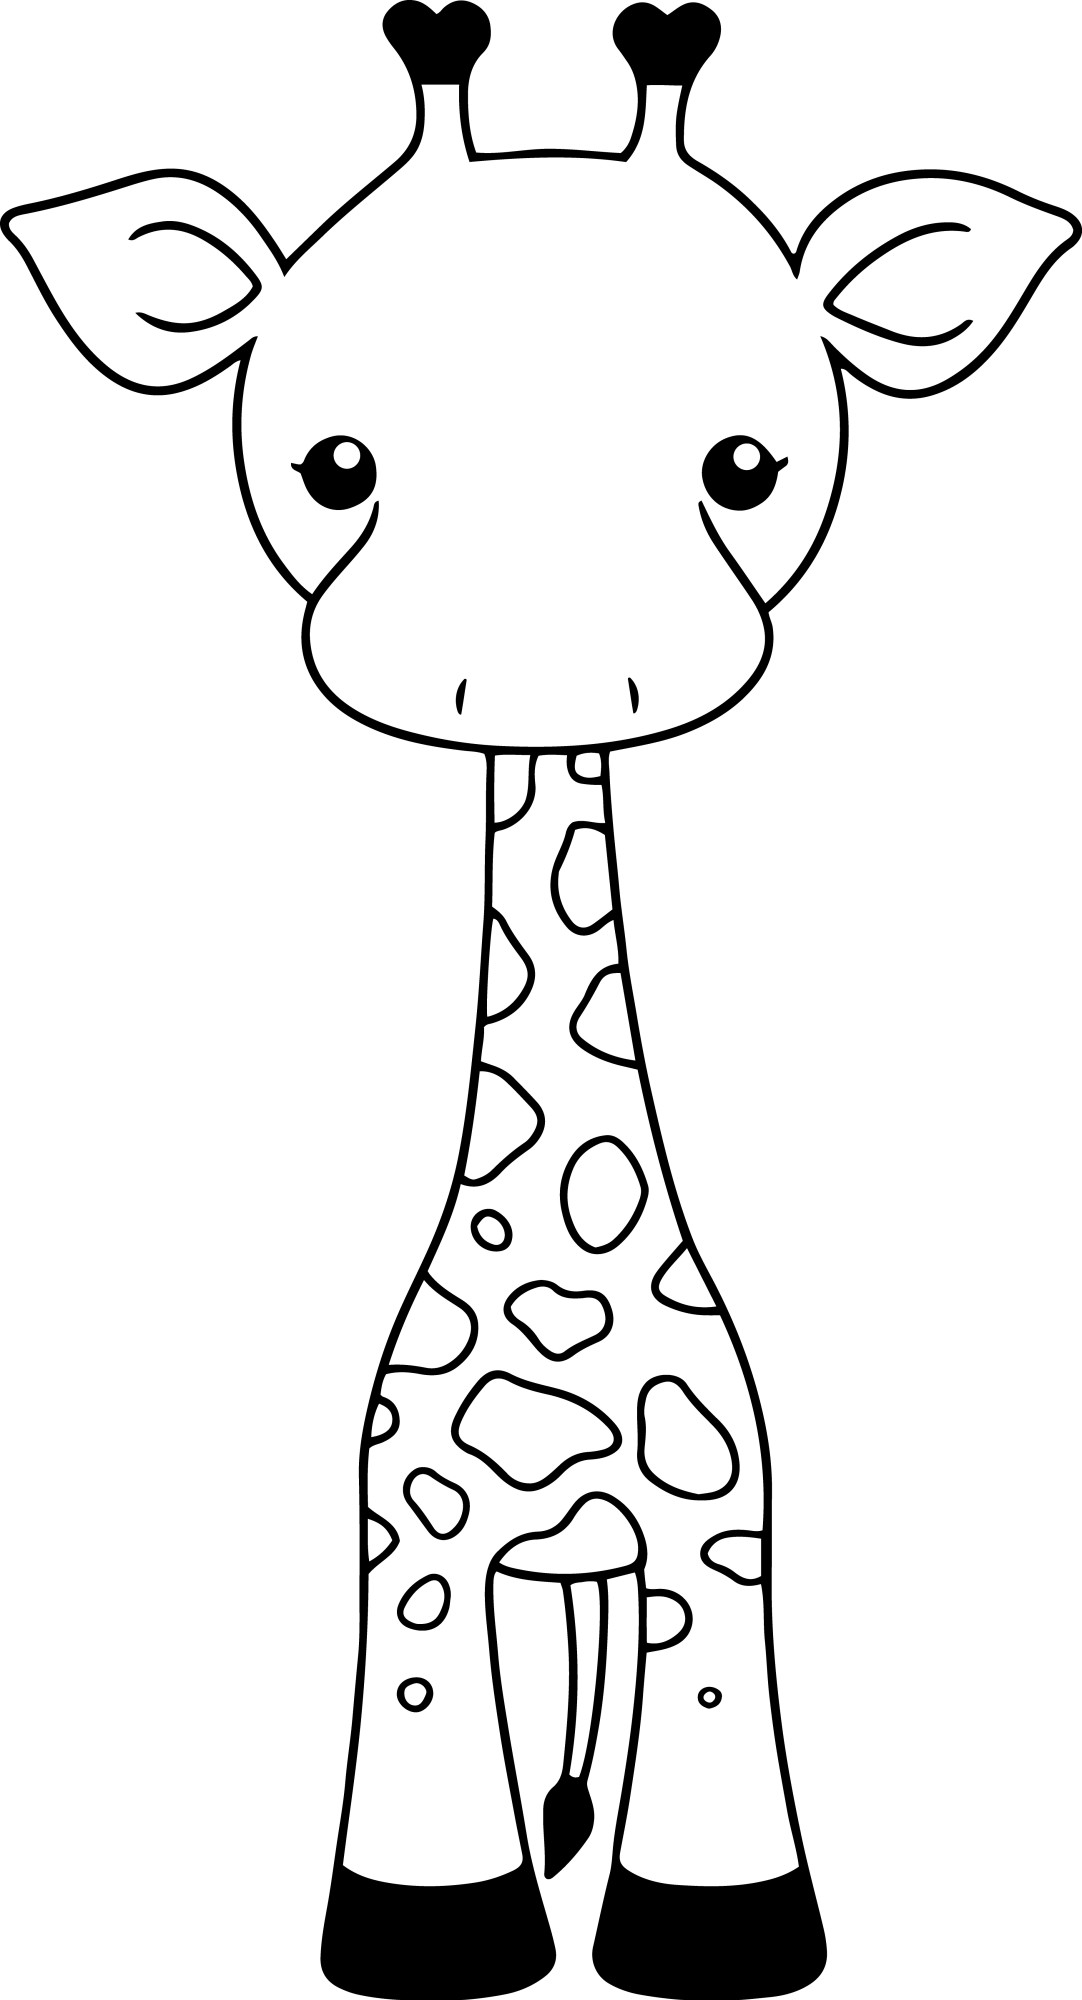 Раскраска для детей: игрушечный жираф